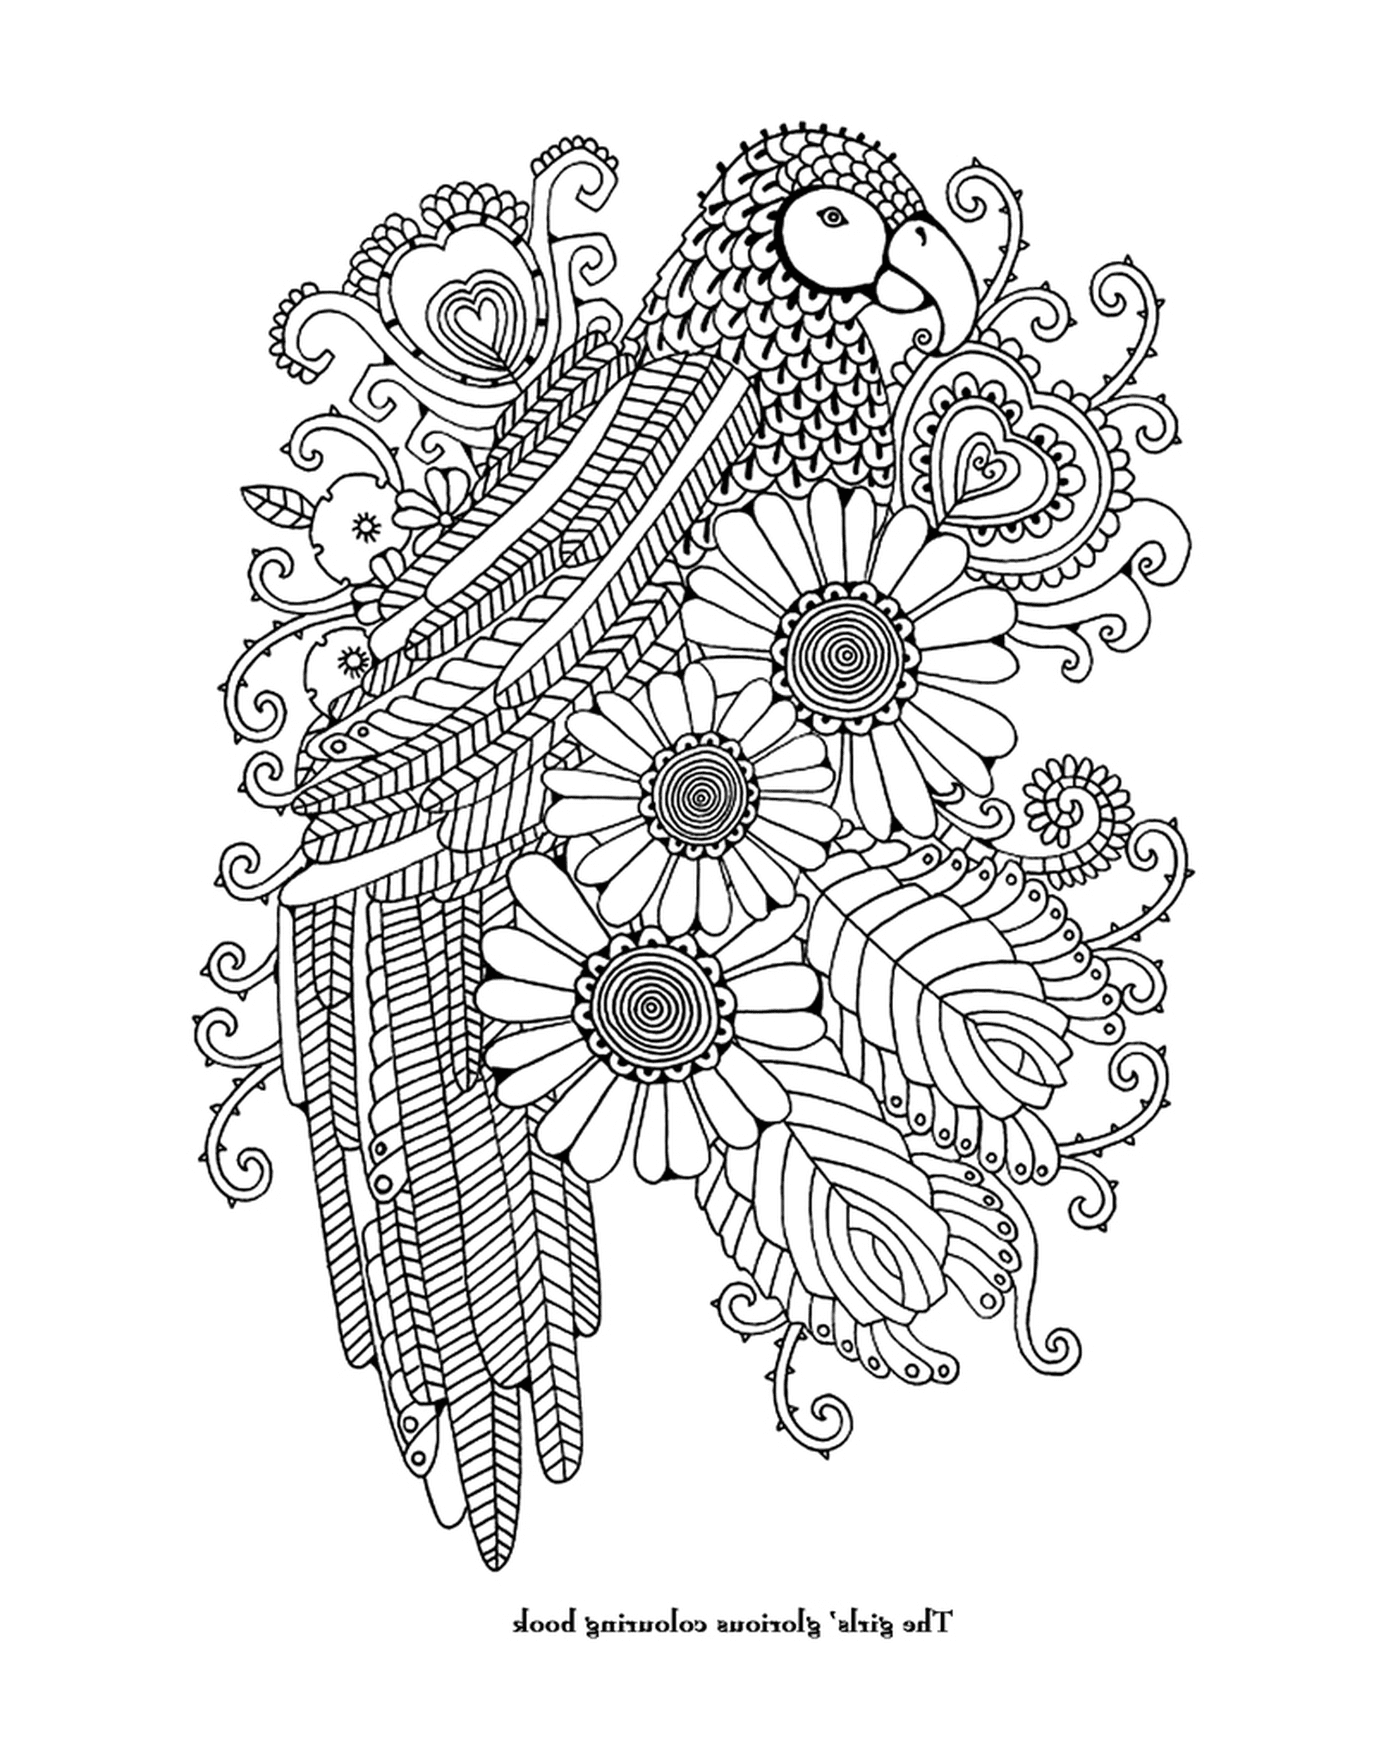  पक्षी और फूल के साथ एक वयस्क 